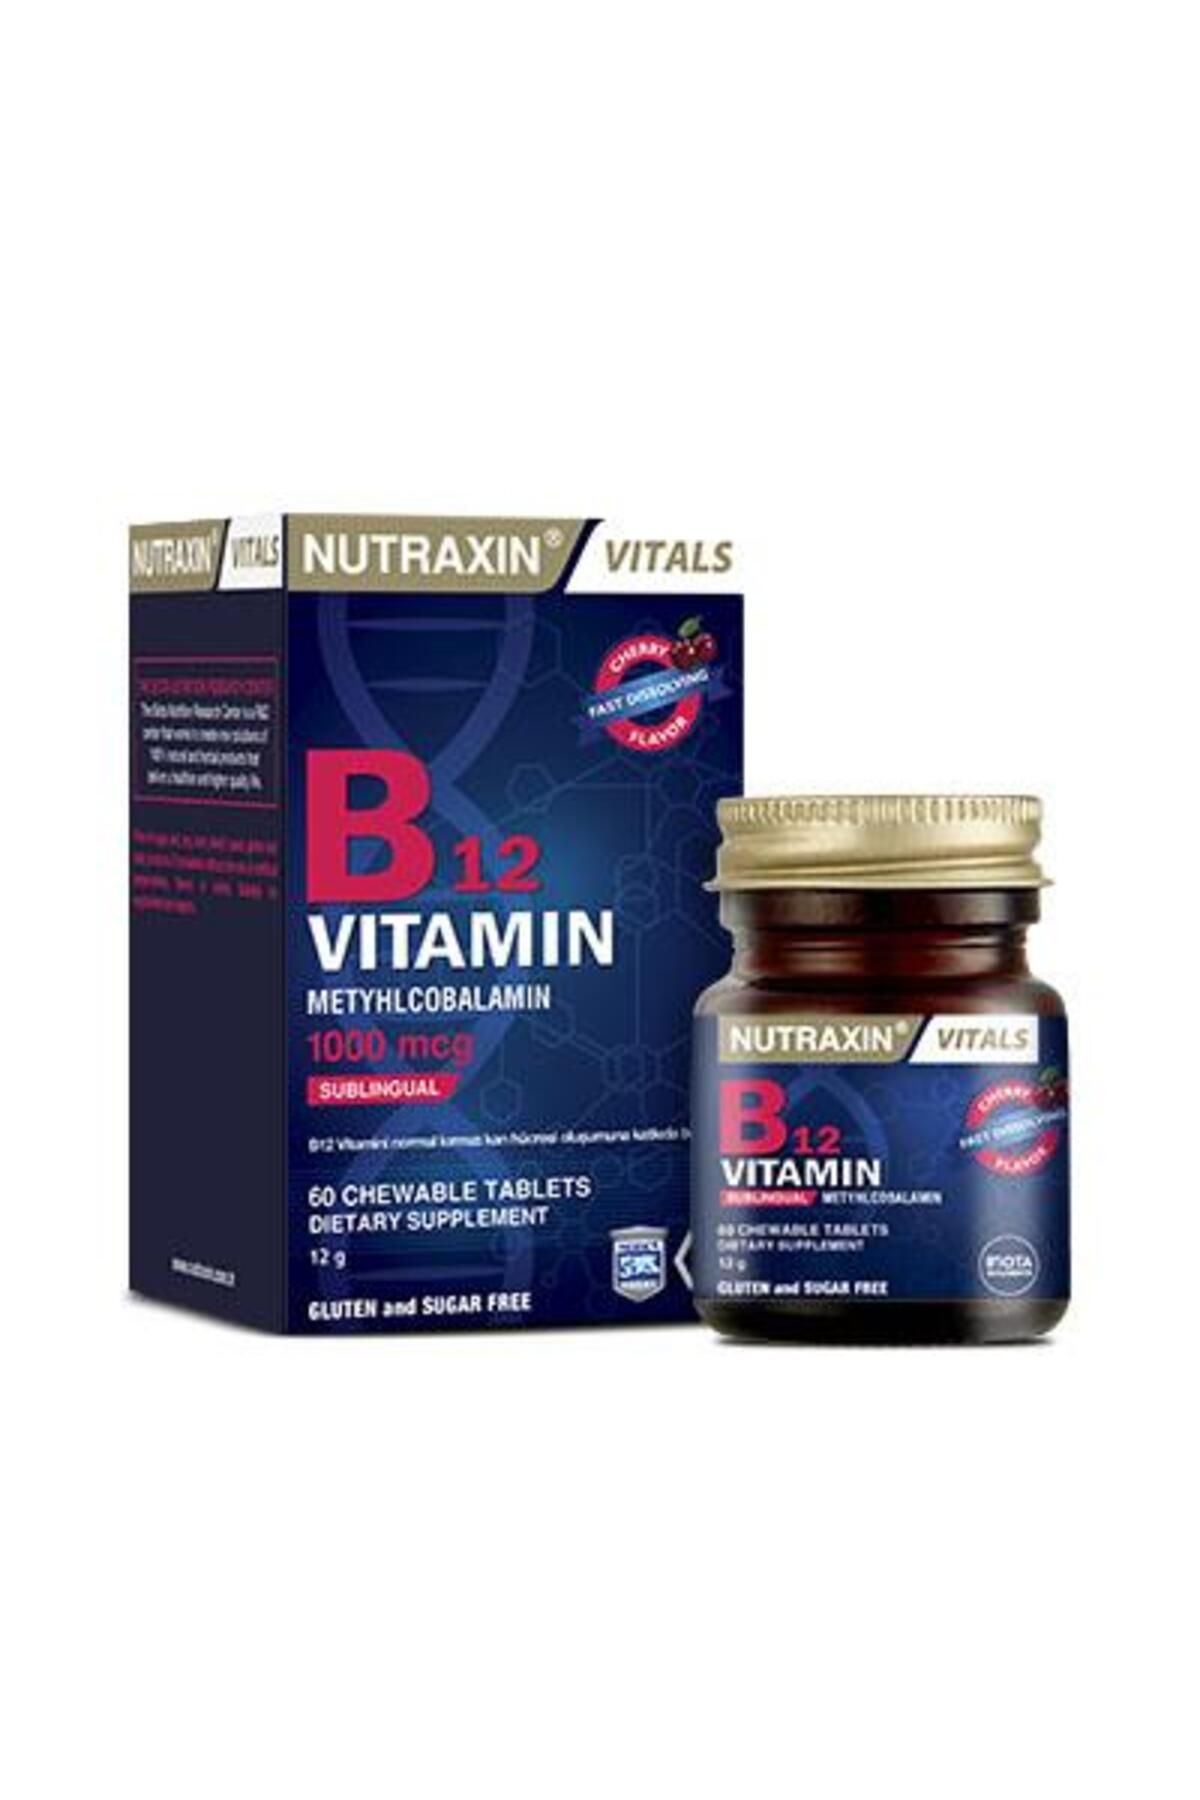 Nutraxin B12 Vitamini (1000 Mcg) - Dil Altı Tableti